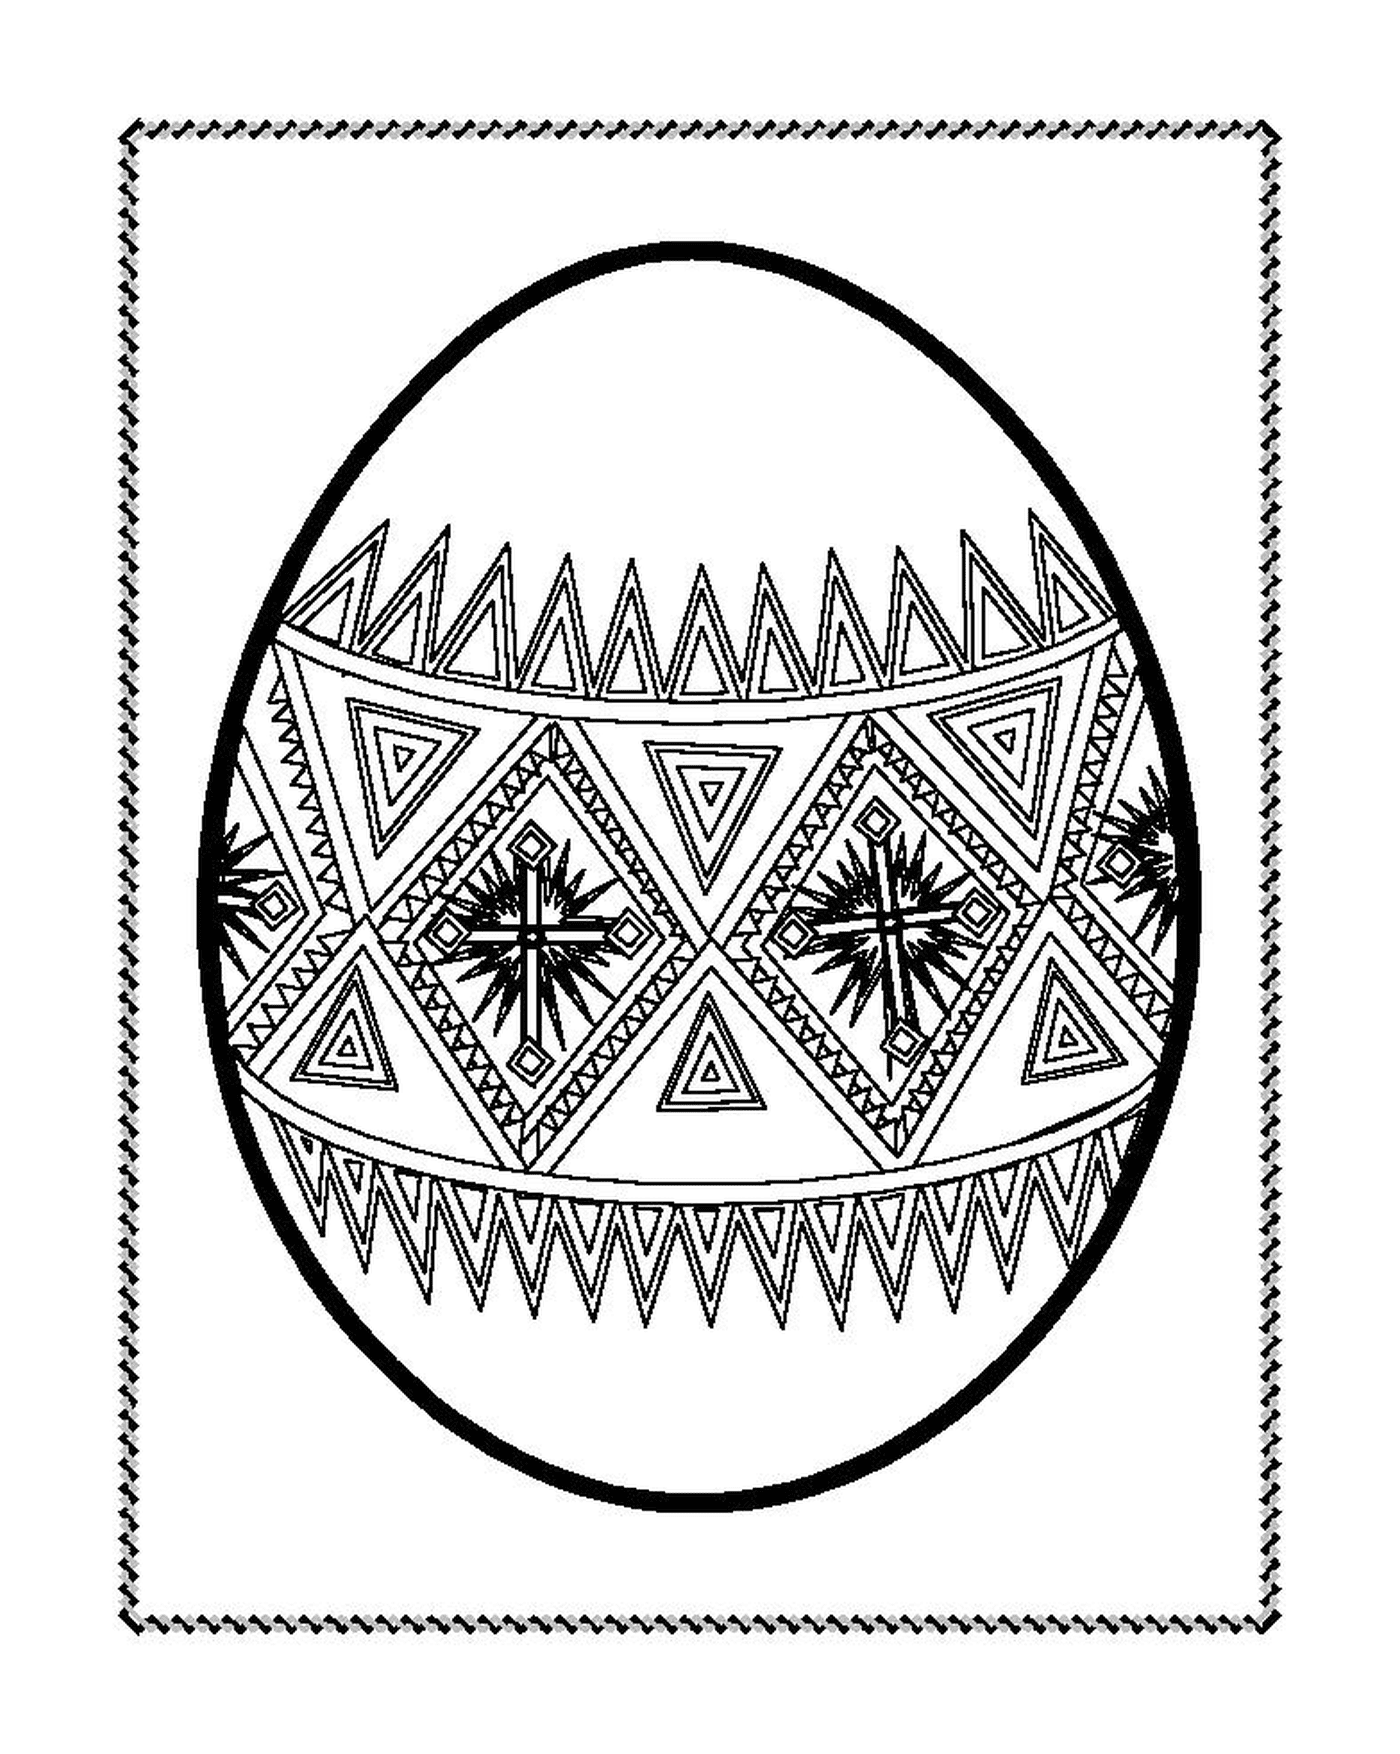  Huevo de Pascua decorado con motivos geométricos 